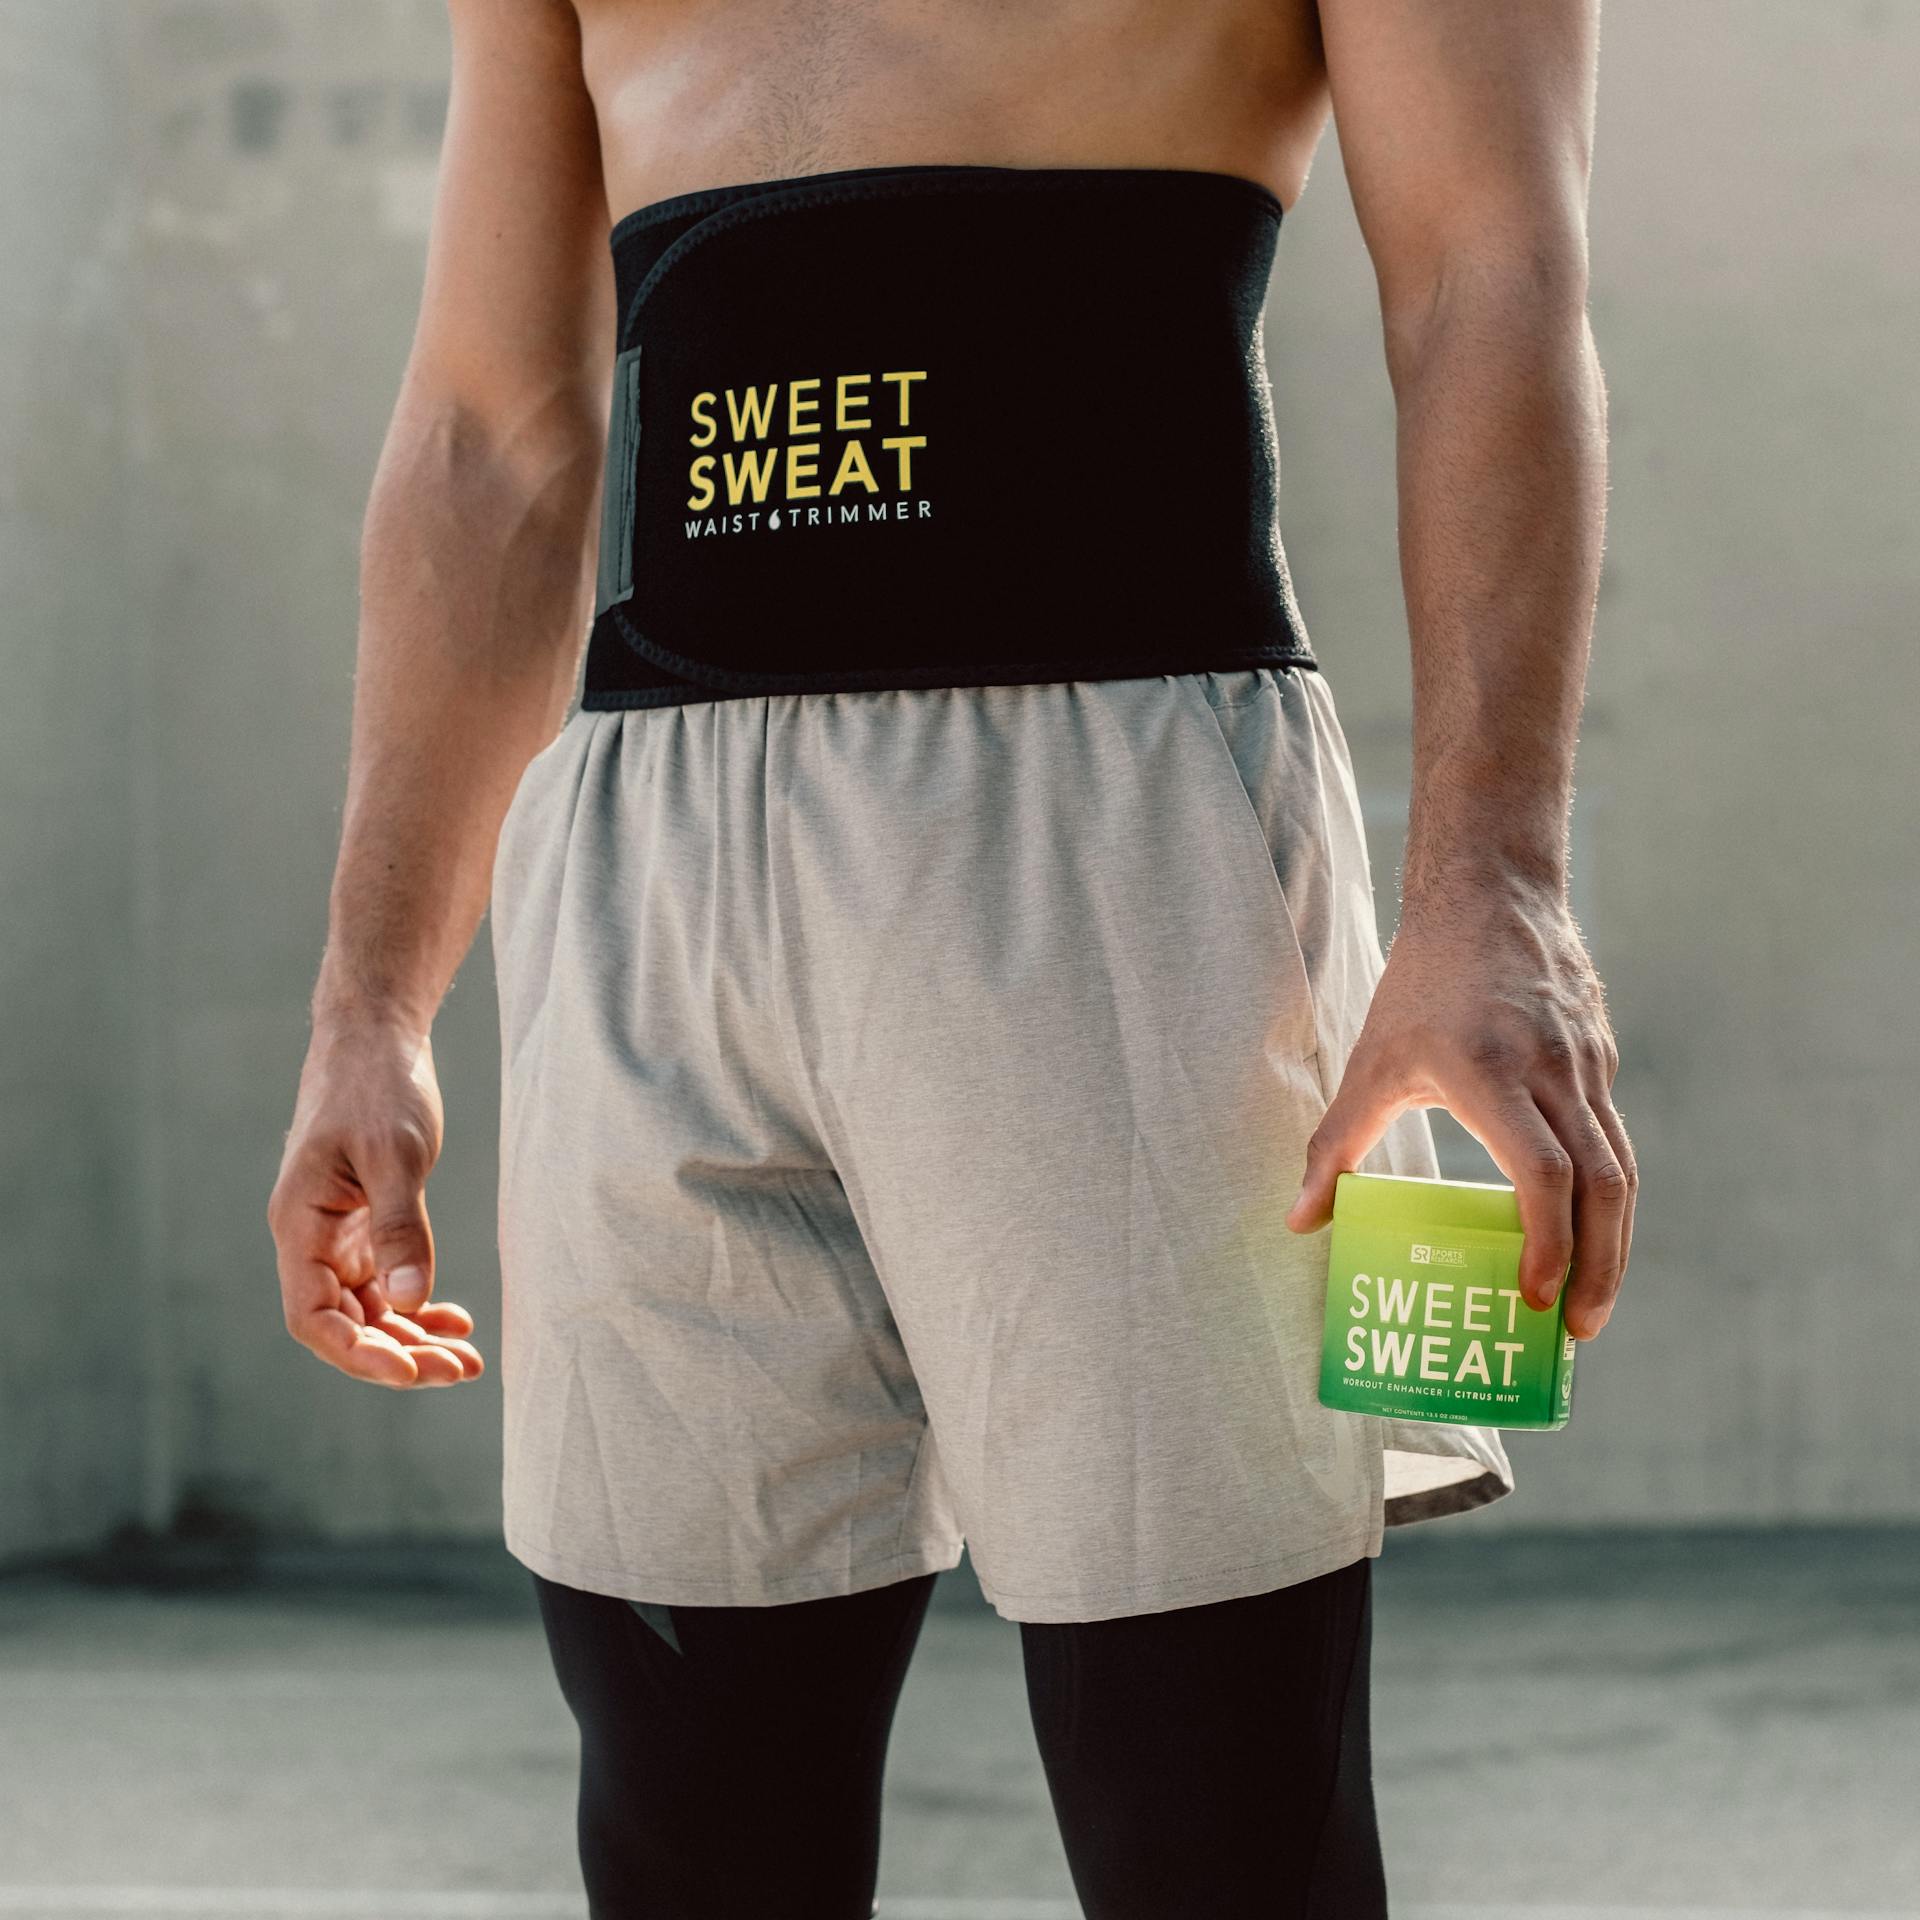 Waist trimmer Belt Body Shaper Hot Sweat Slimming Shaper - Sweet Sweat